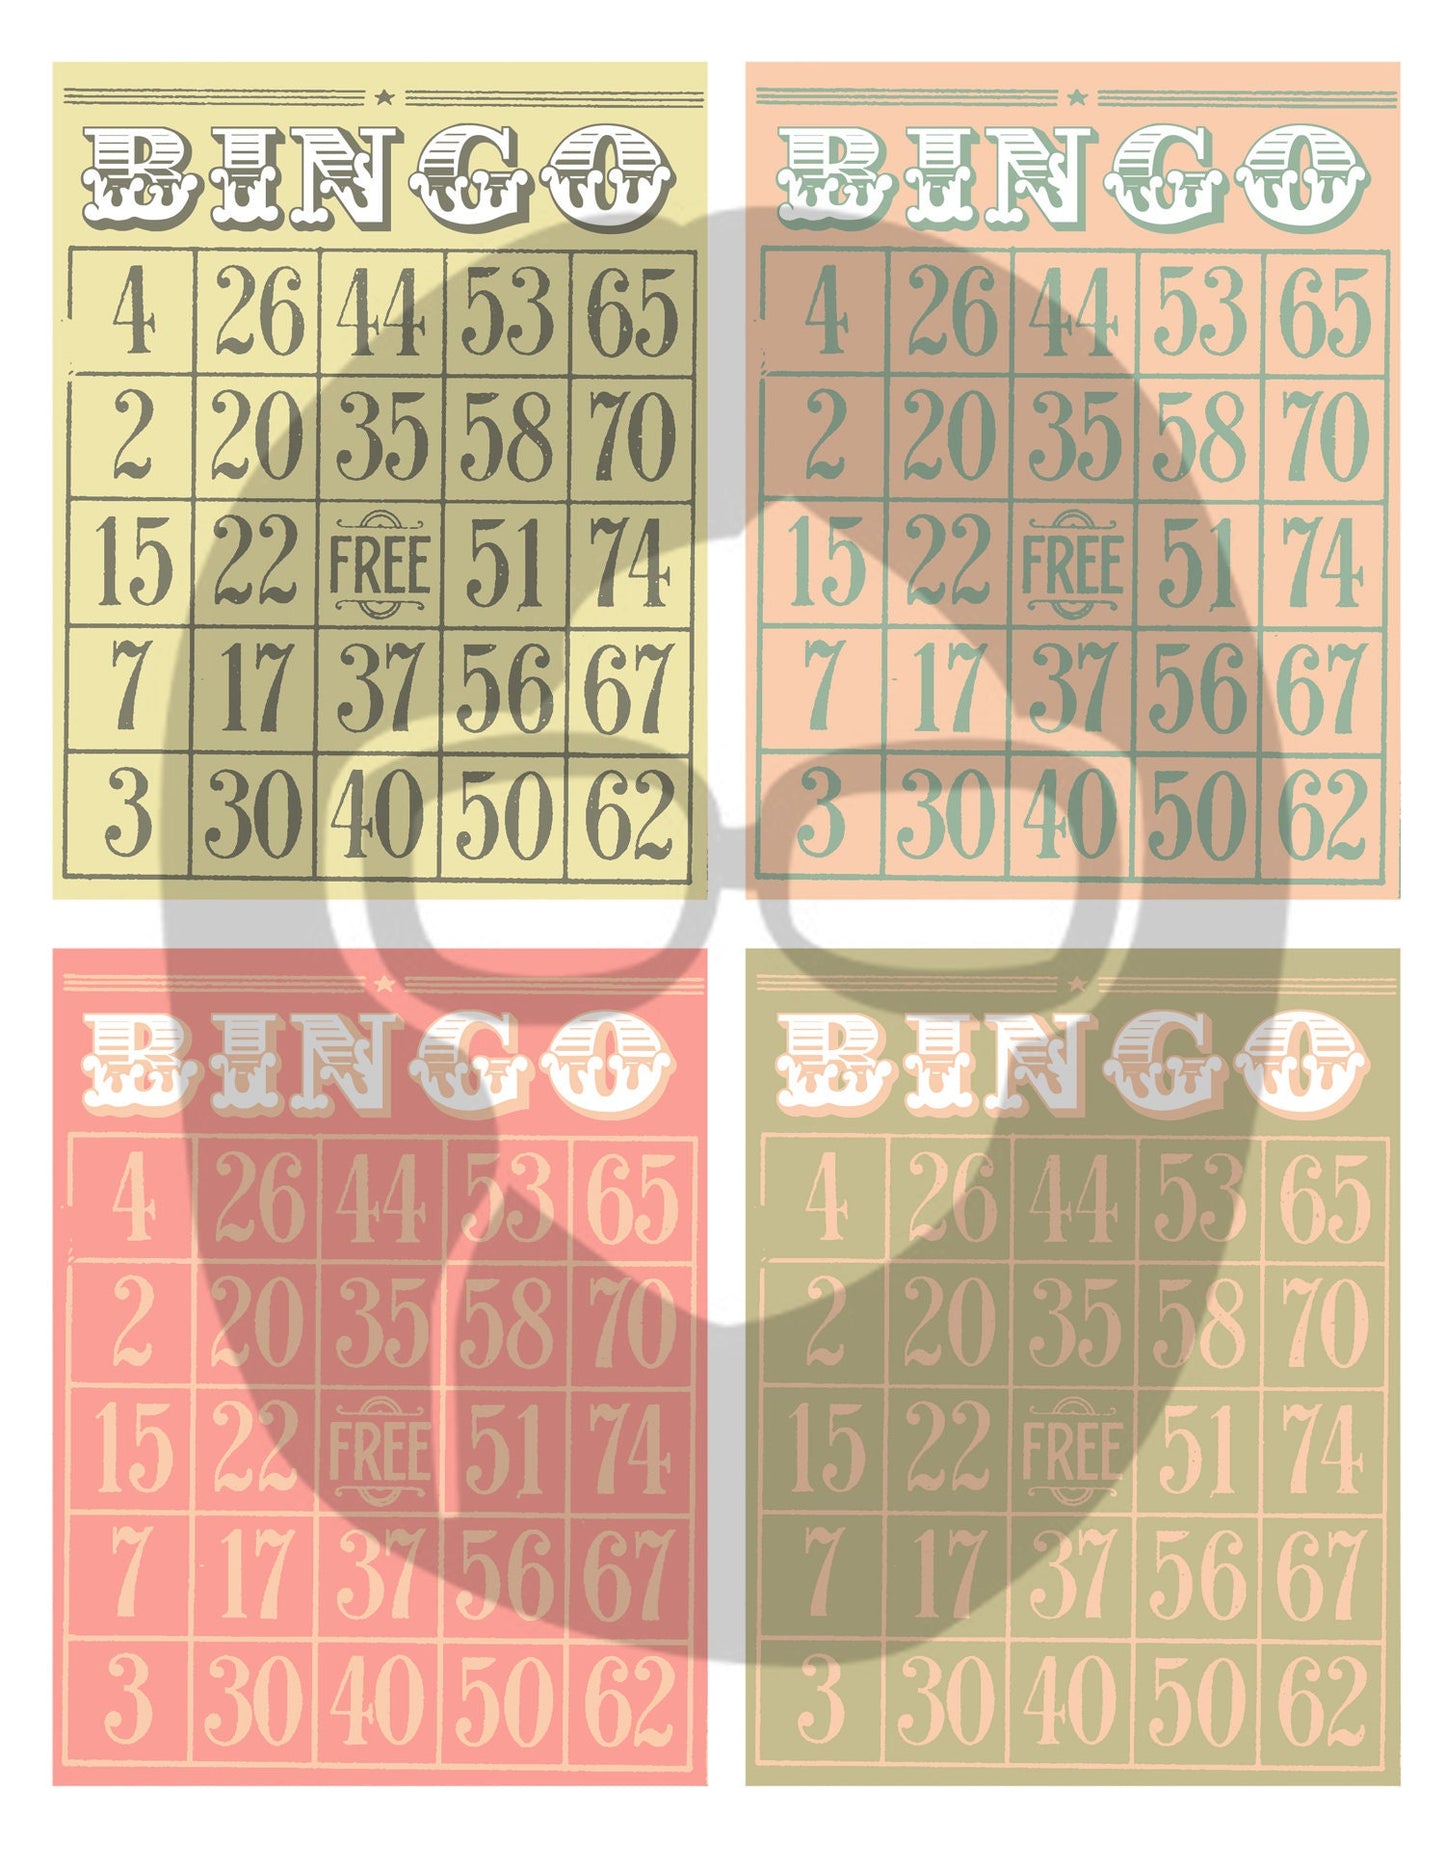 Blank Bingo Cards Set #2 - 3 Pg Instant Download - bingo digital roses floral, project life kit, junk journal supply